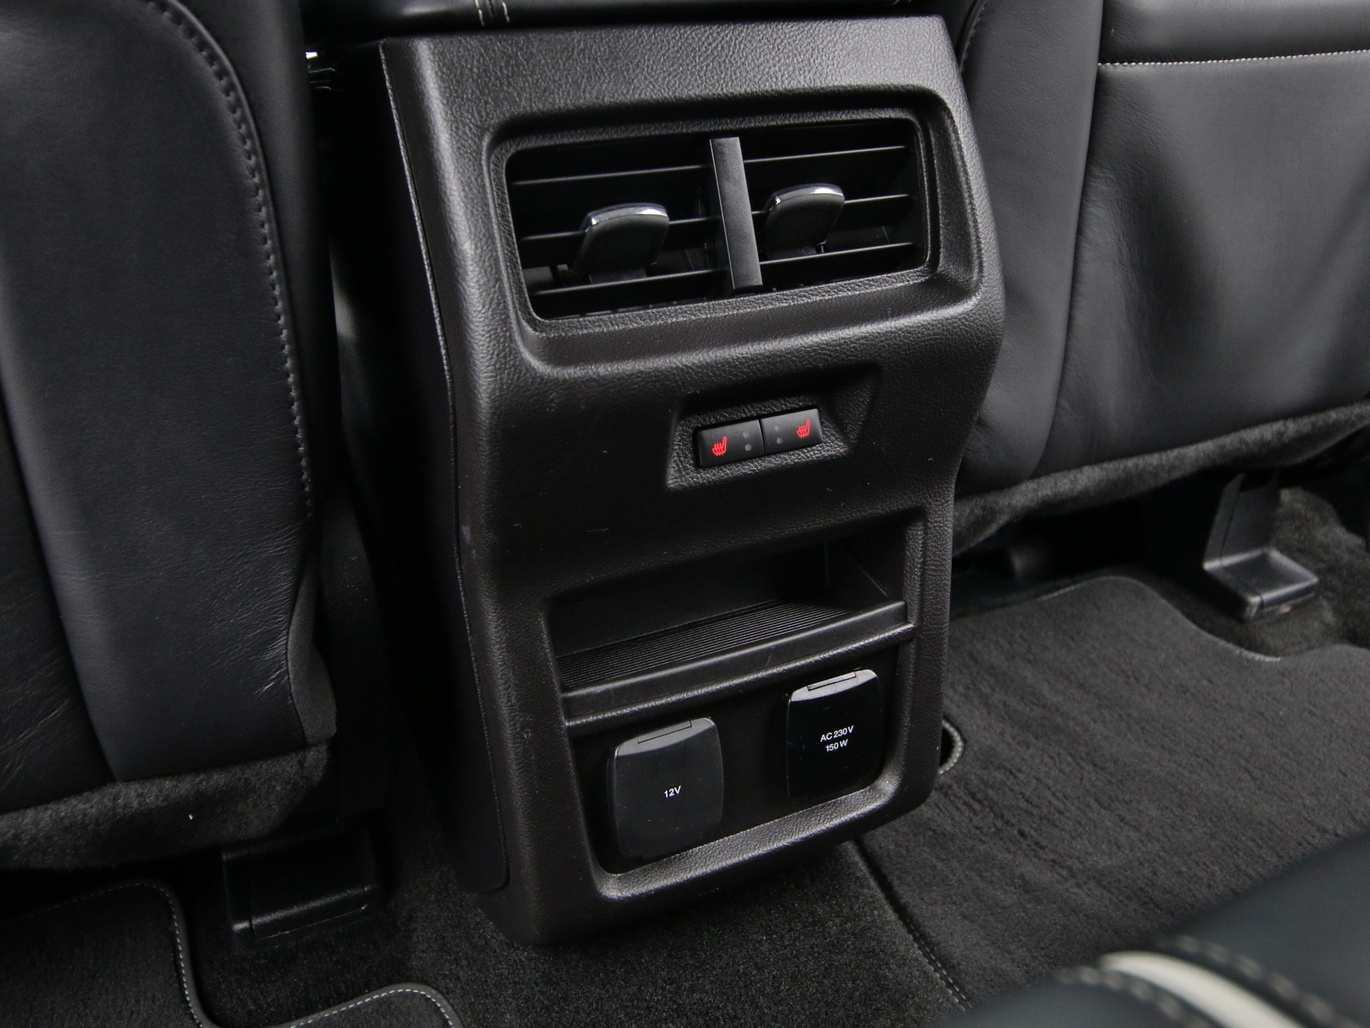  Ford Edge Vignale 210 PS Aut. 4X4 / Standheiz. / Parkass. in Iridium Schwarz 